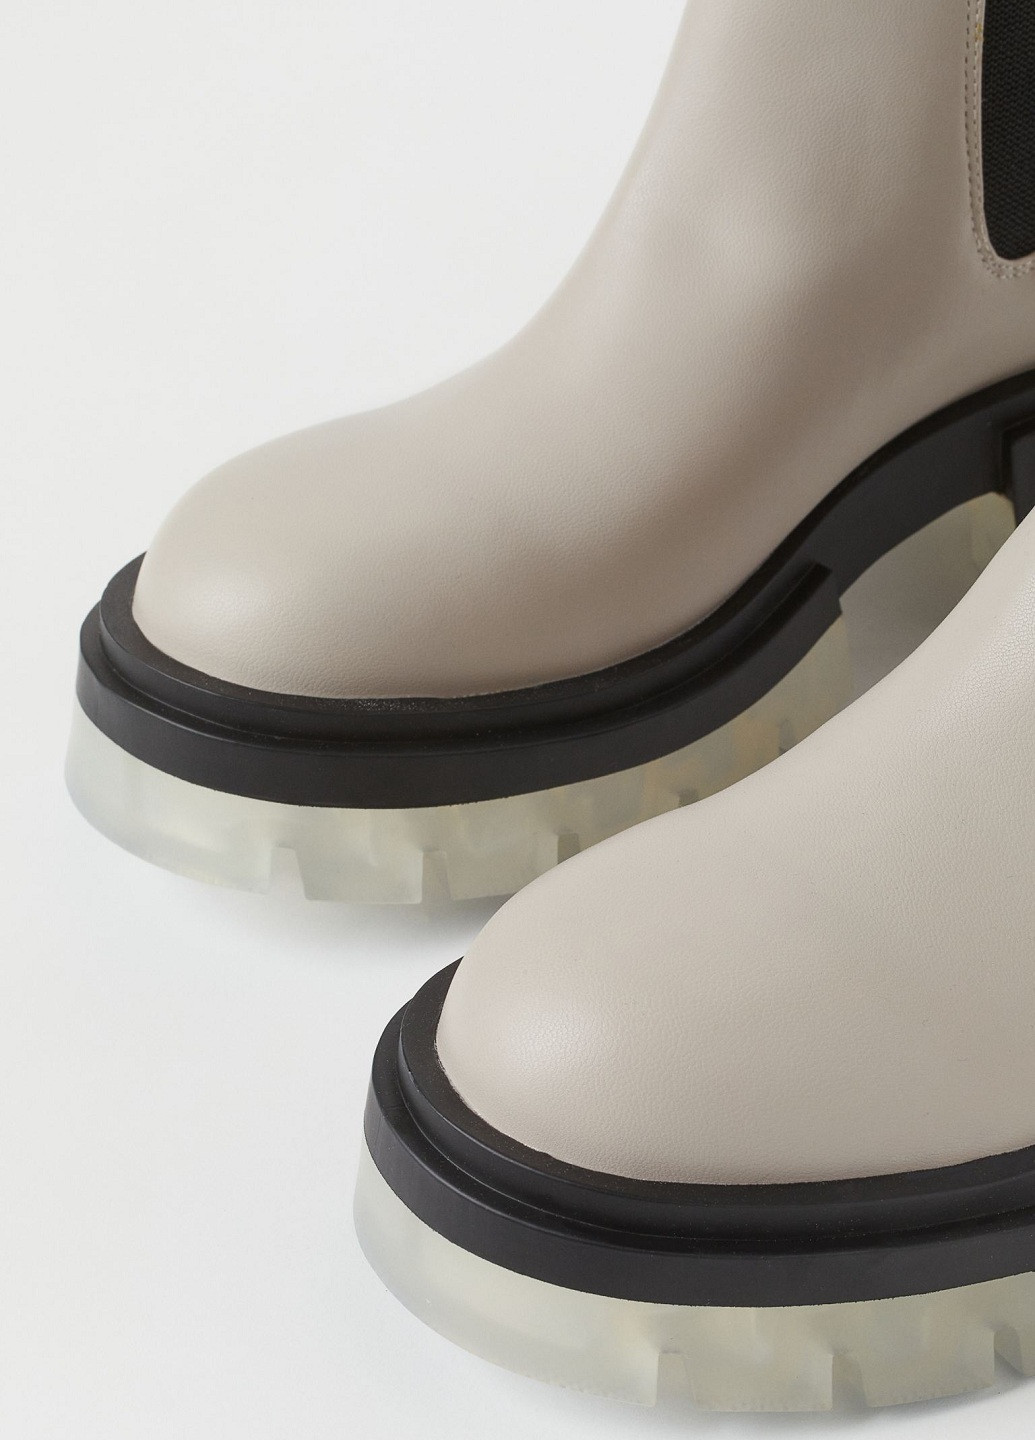 Осенние ботинки H&M из полиуретана